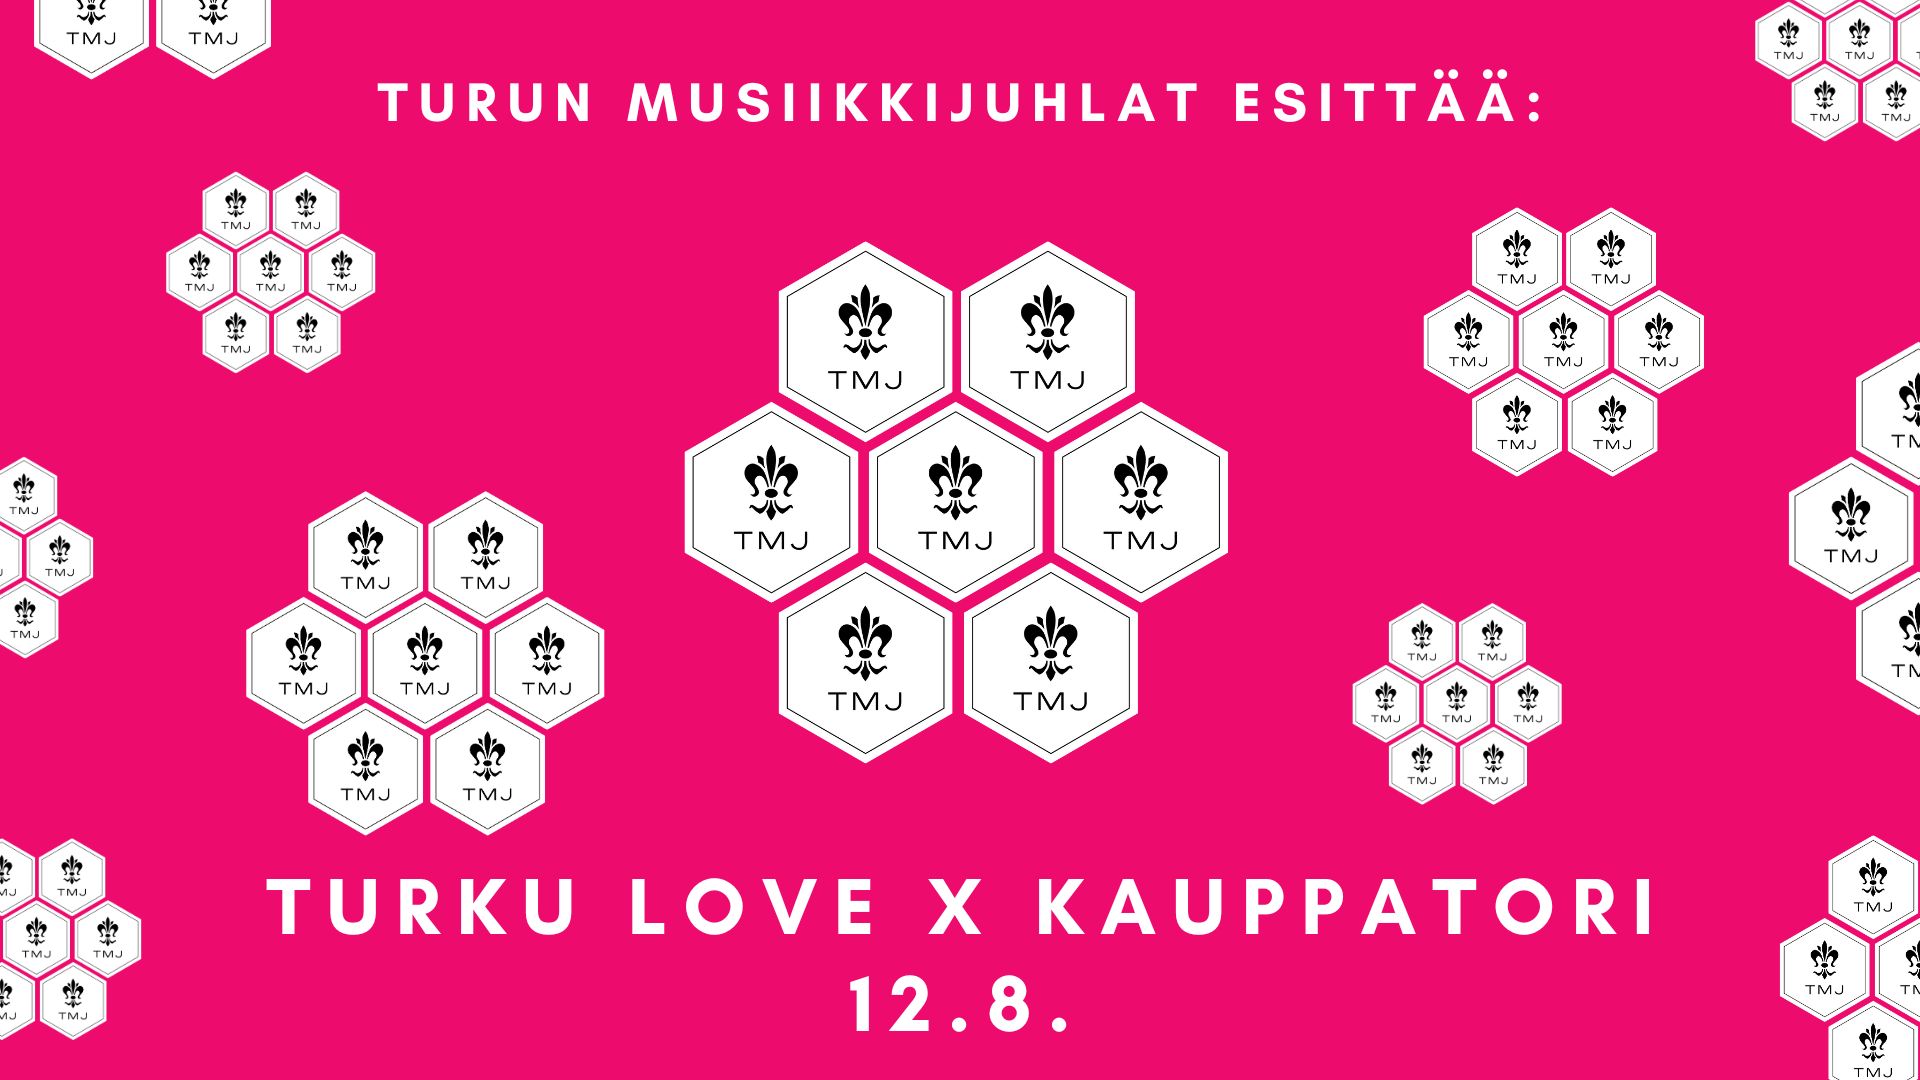 TURKU LOVE x KAUPPATORI | Turun Musiikkijuhlat